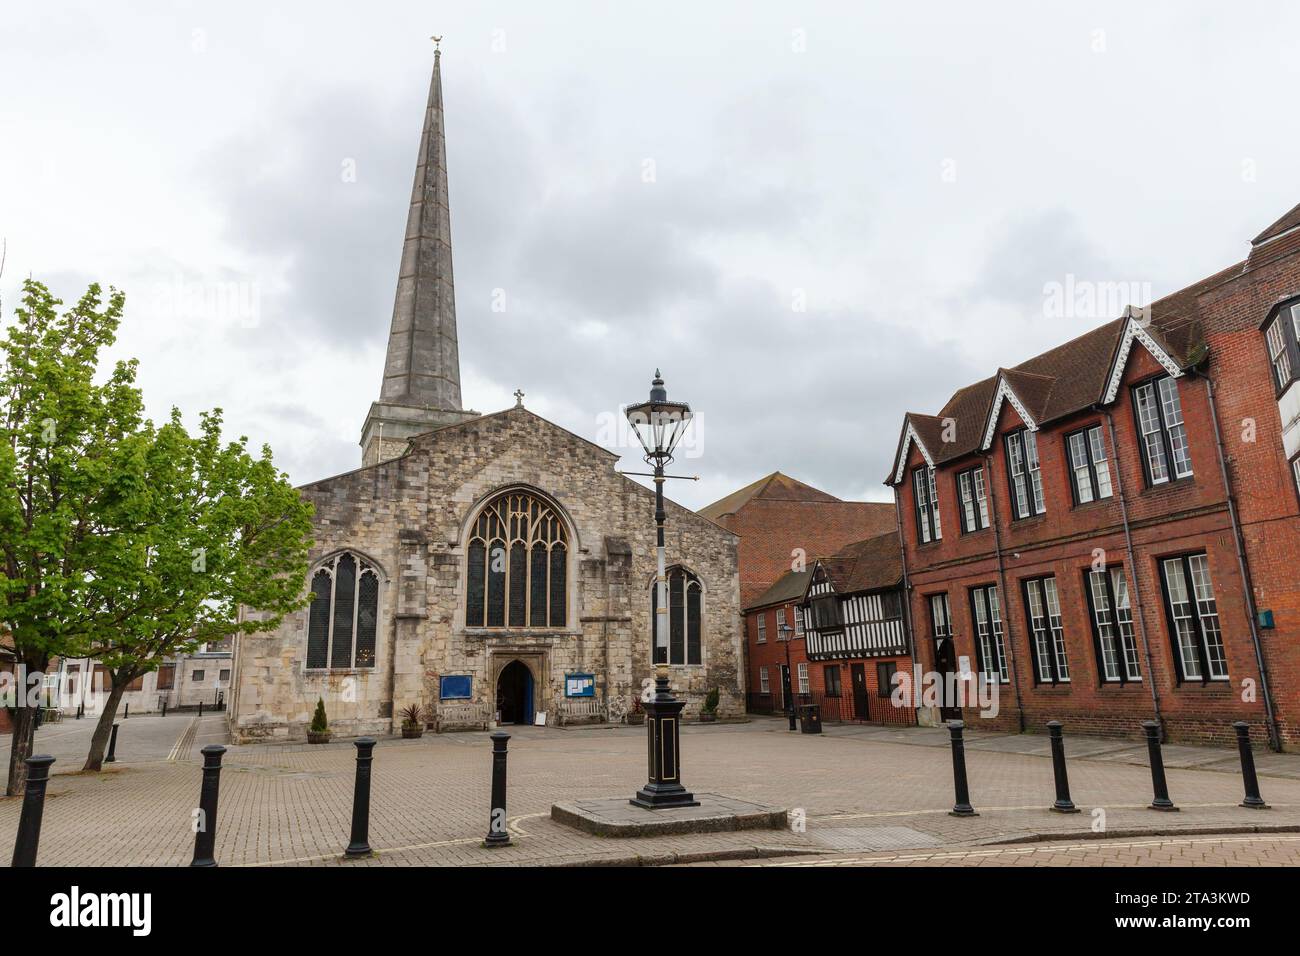 Blick auf den St. Michaels Square mit Straßenlaternen auf Saint Michael the Archangel, der ältesten Kirche in Southampton, Großbritannien Stockfoto